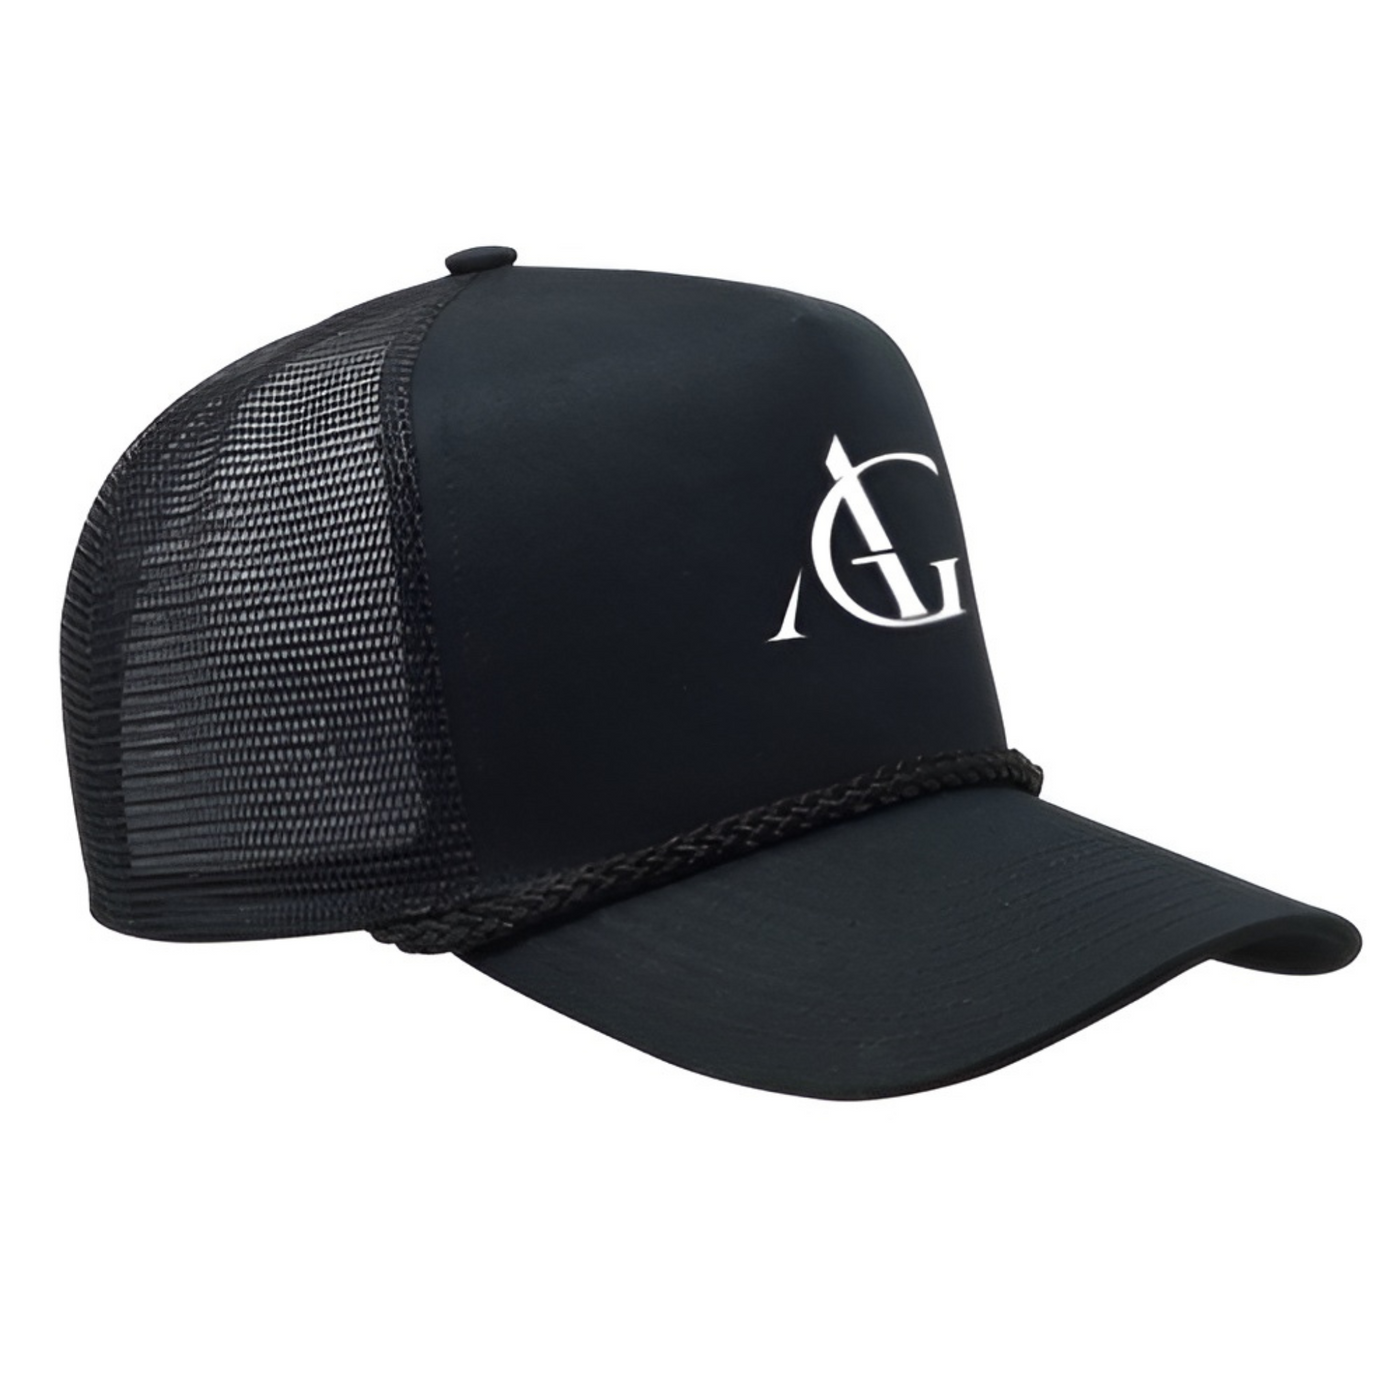 Austin Giorgio - Corded Trucker Hat: Black